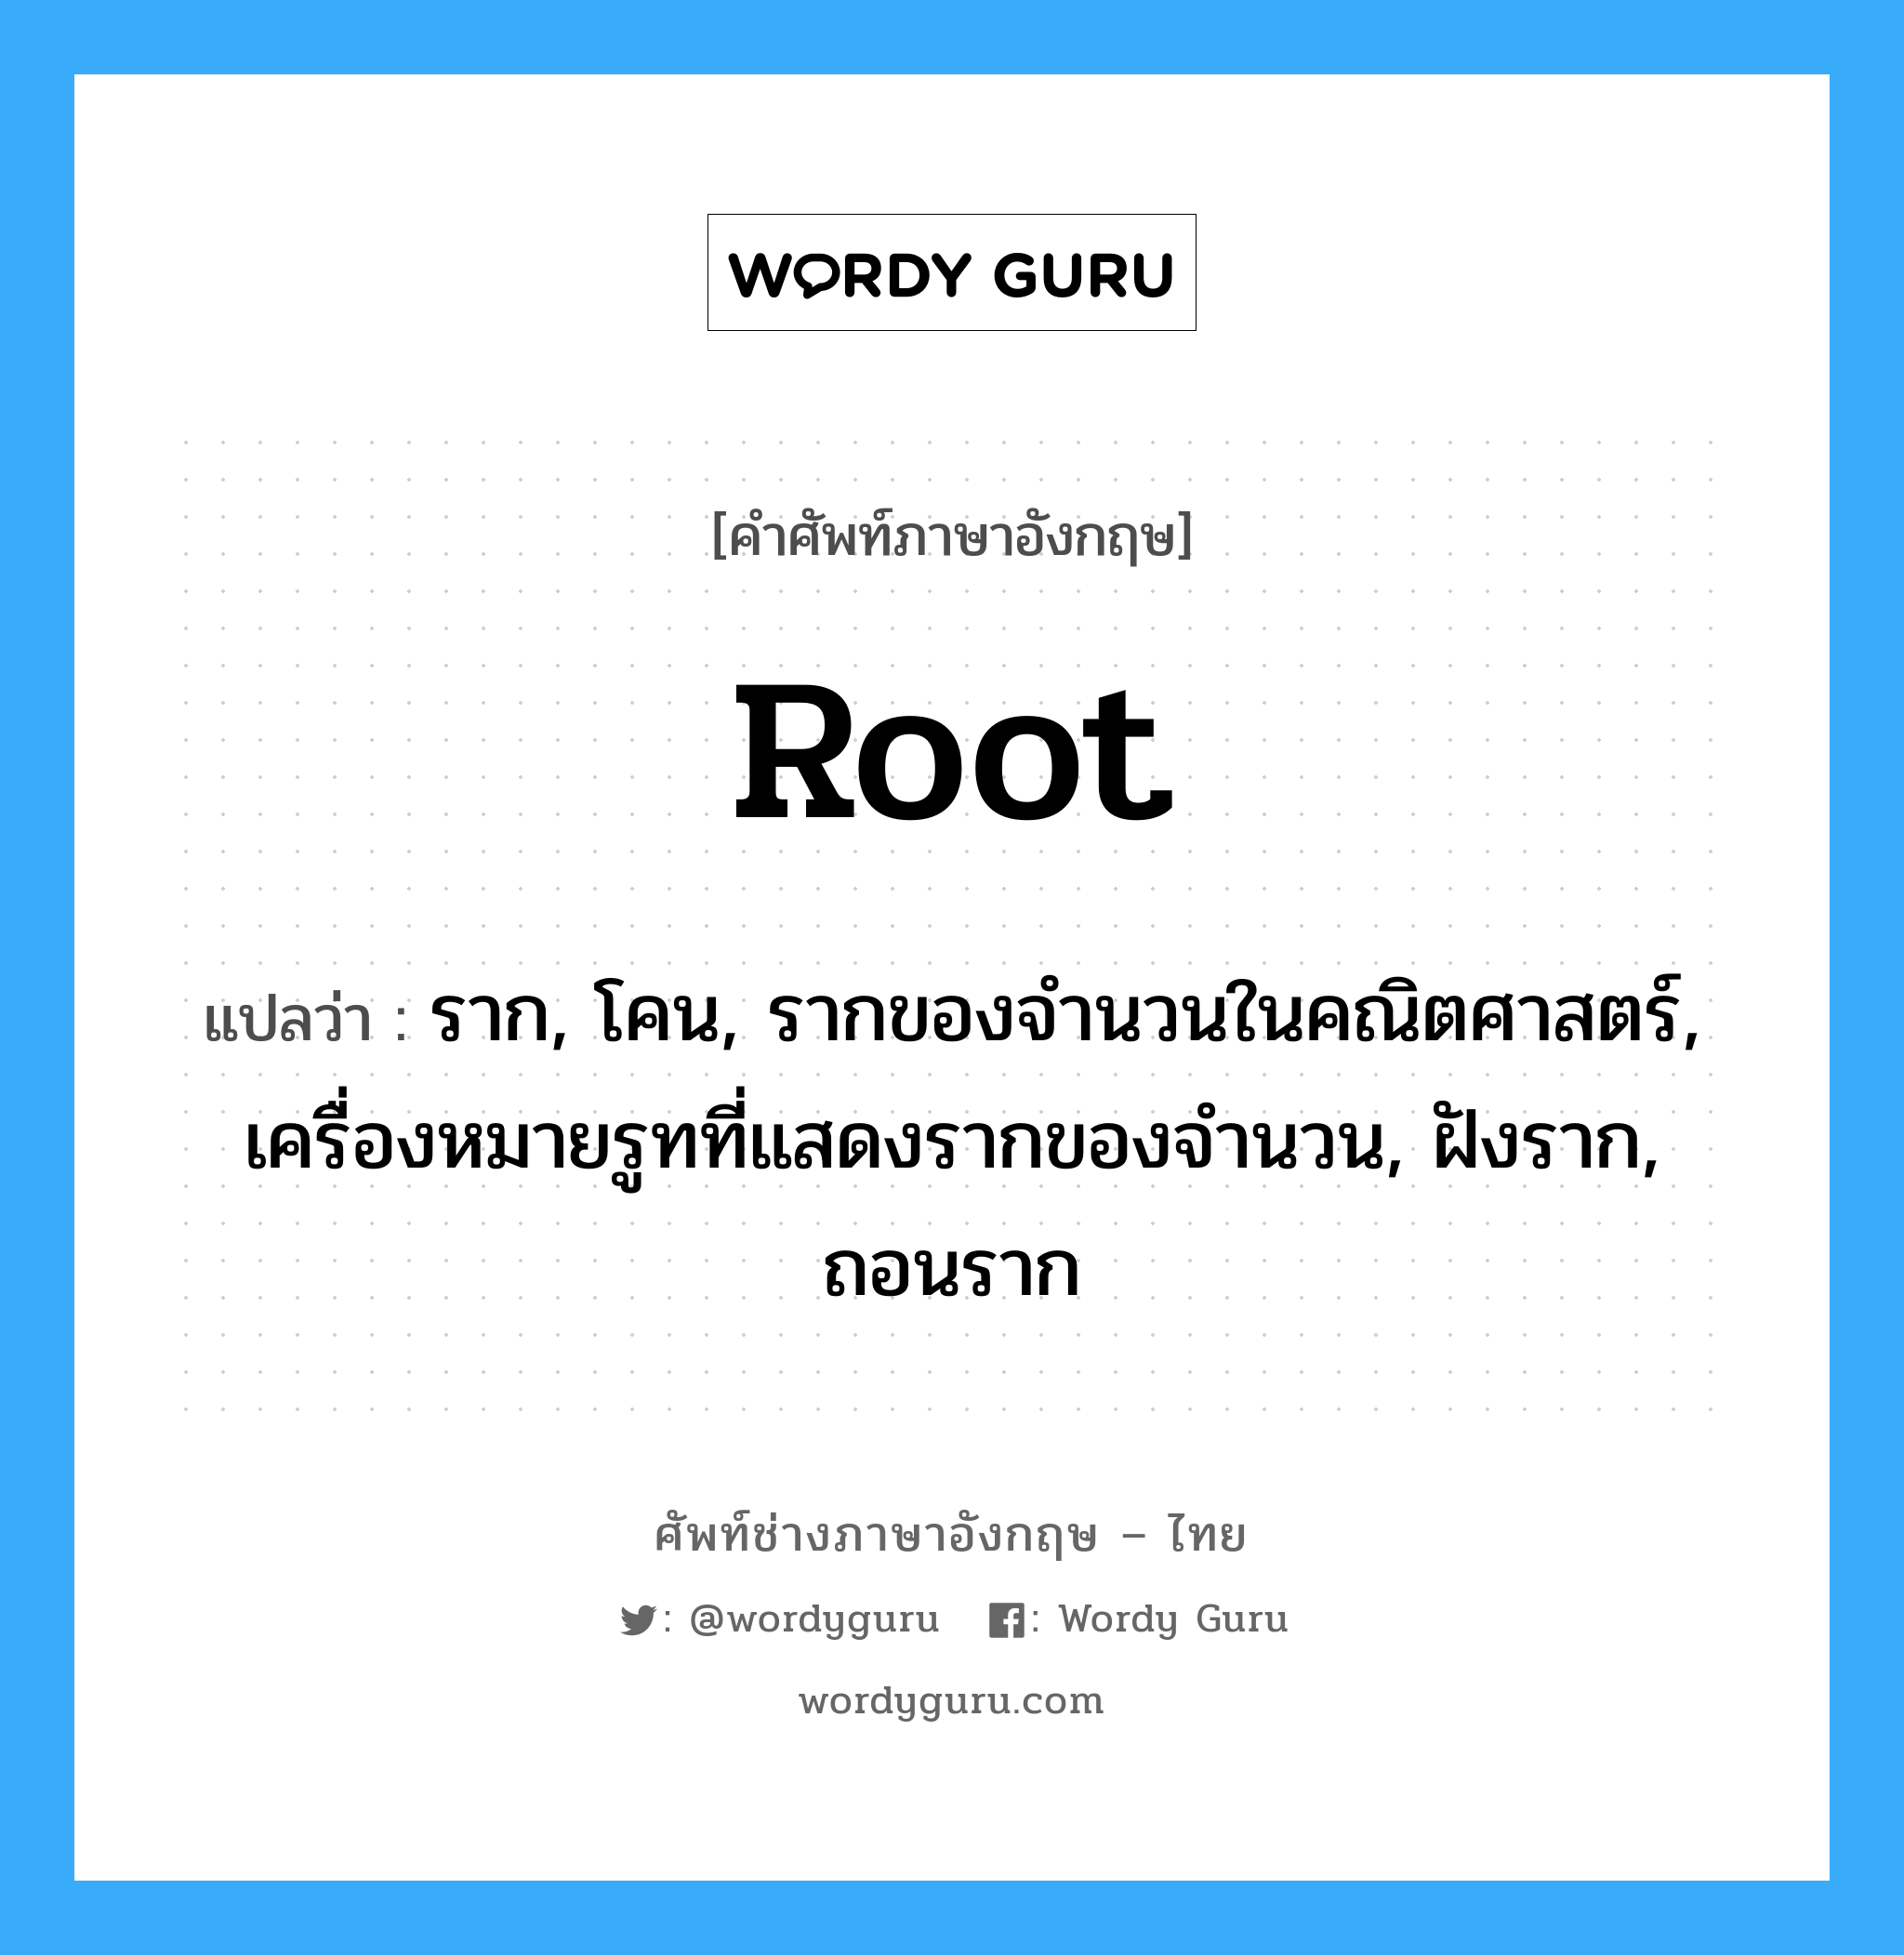 root แปลว่า?, คำศัพท์ช่างภาษาอังกฤษ - ไทย root คำศัพท์ภาษาอังกฤษ root แปลว่า ราก, โคน, รากของจำนวนในคณิตศาสตร์, เครื่องหมายรูทที่แสดงรากของจำนวน, ฝังราก, ถอนราก